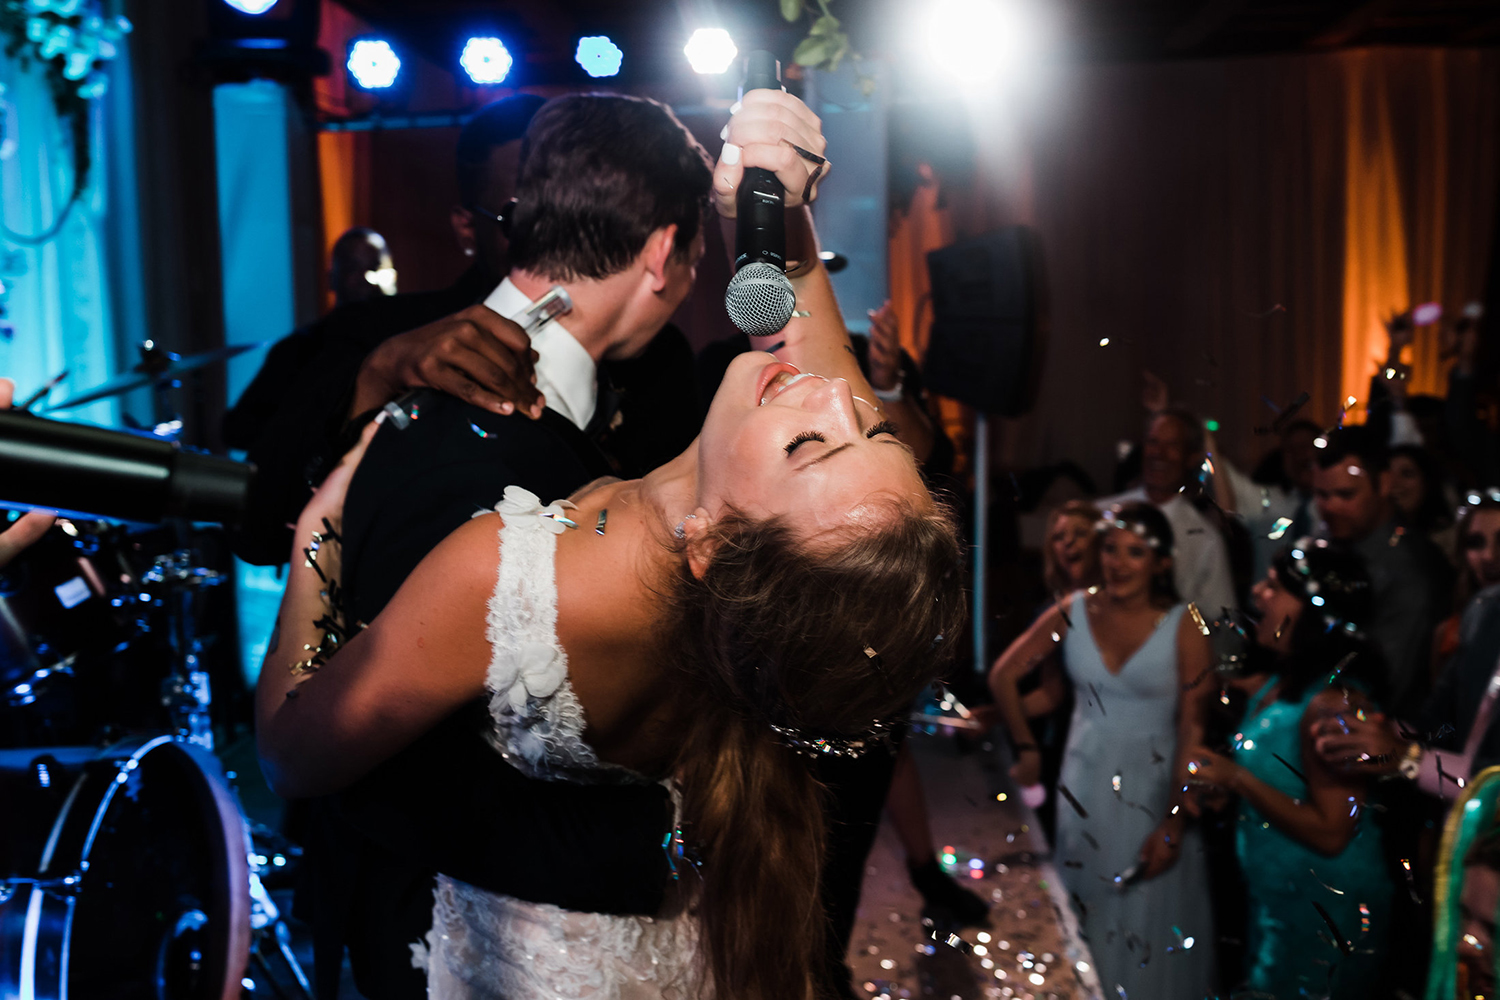 dancing - singing - karaoke at wedding reception